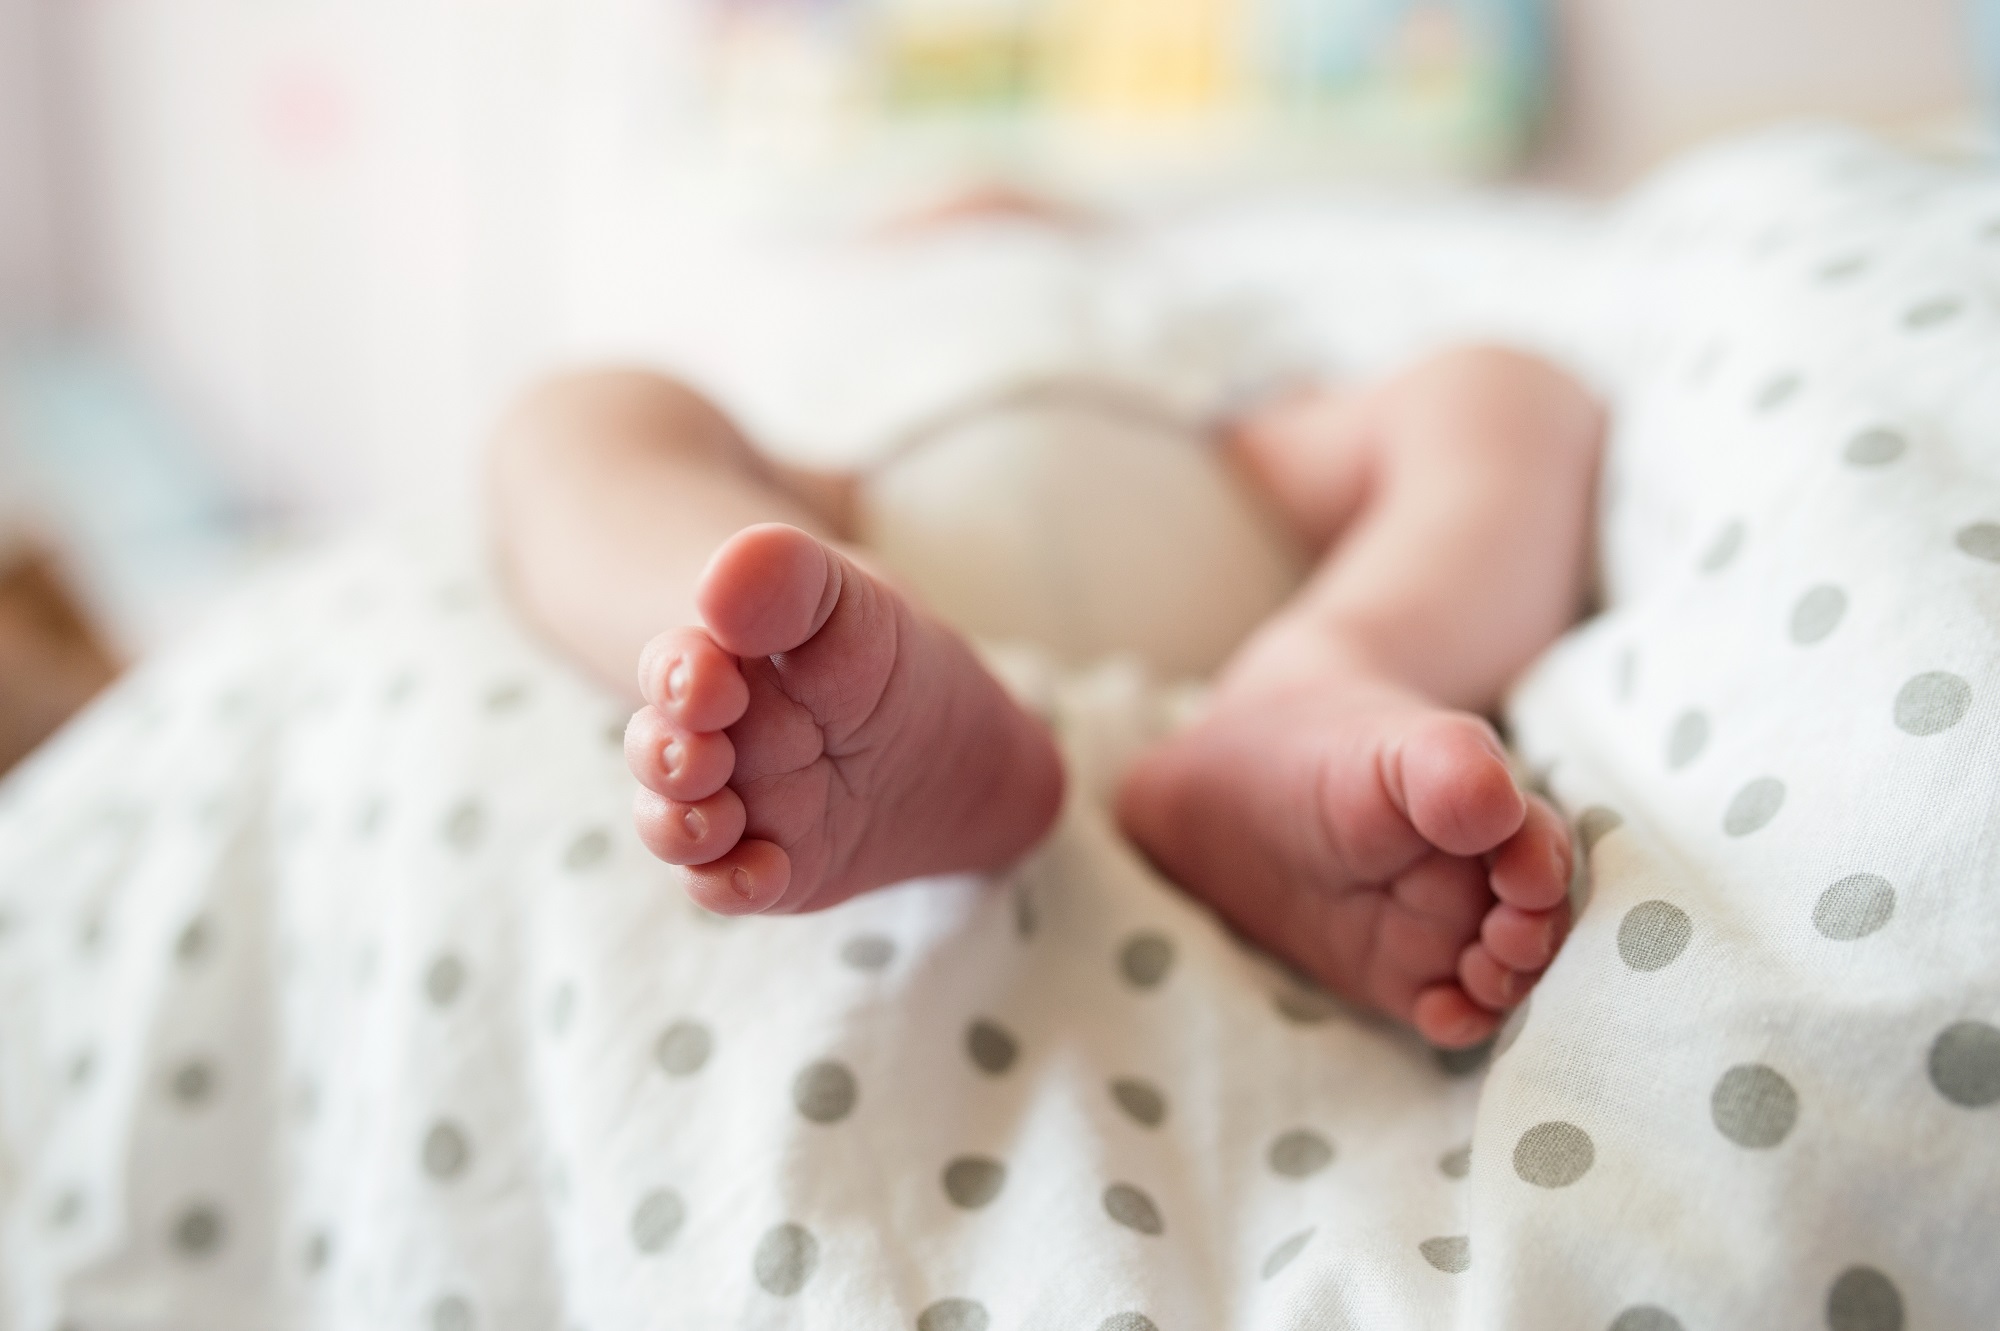 Pediatra: “Minimo storico nascite non sorprende, trend continuerà”